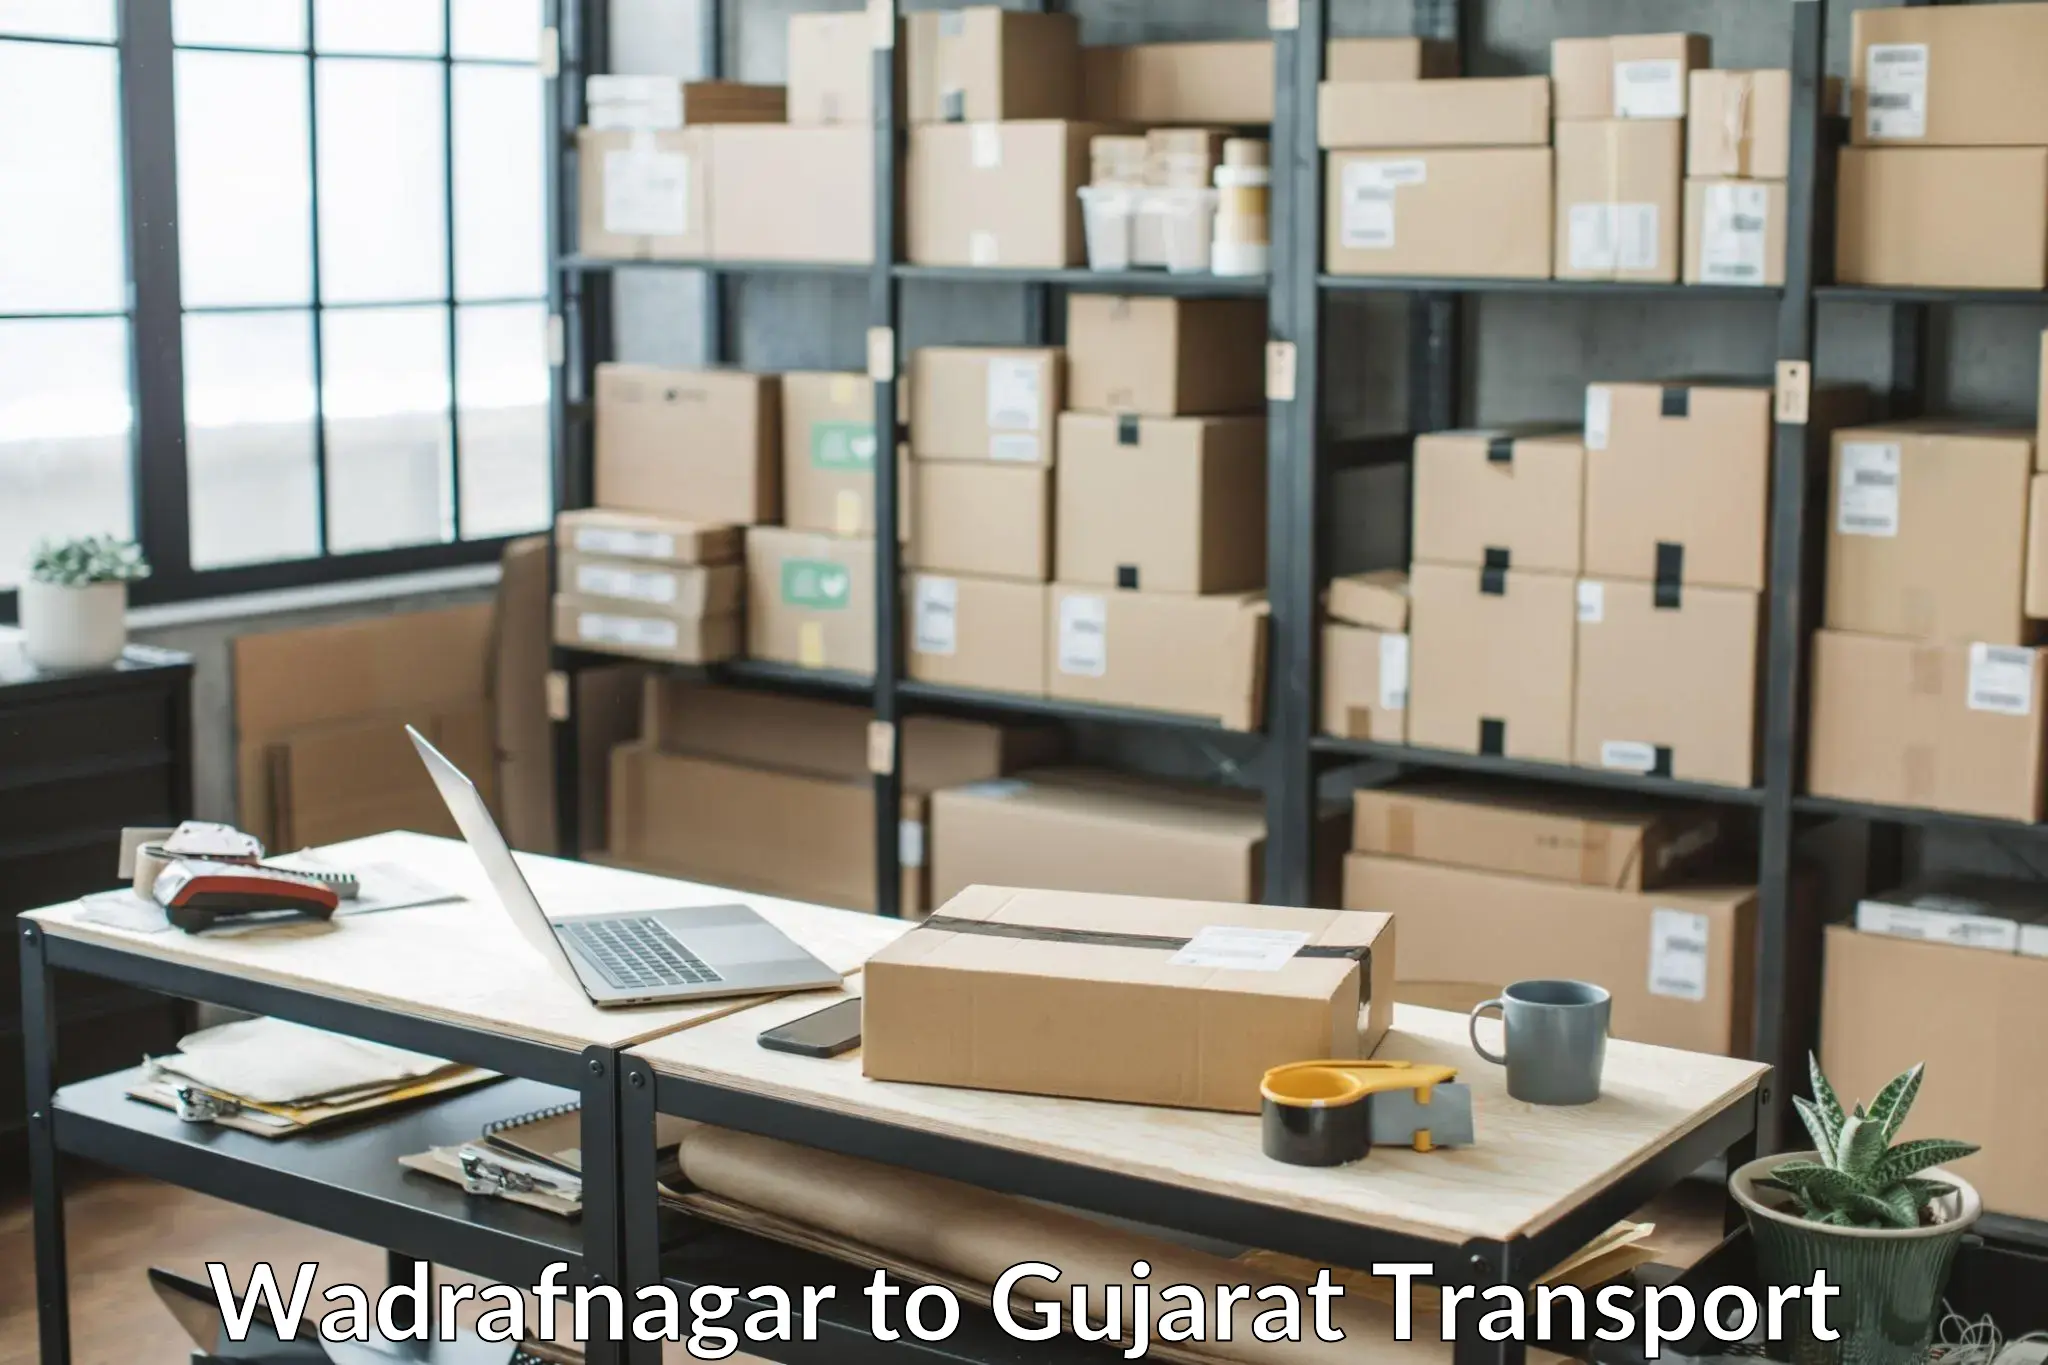 Cargo transportation services Wadrafnagar to Ahmedabad